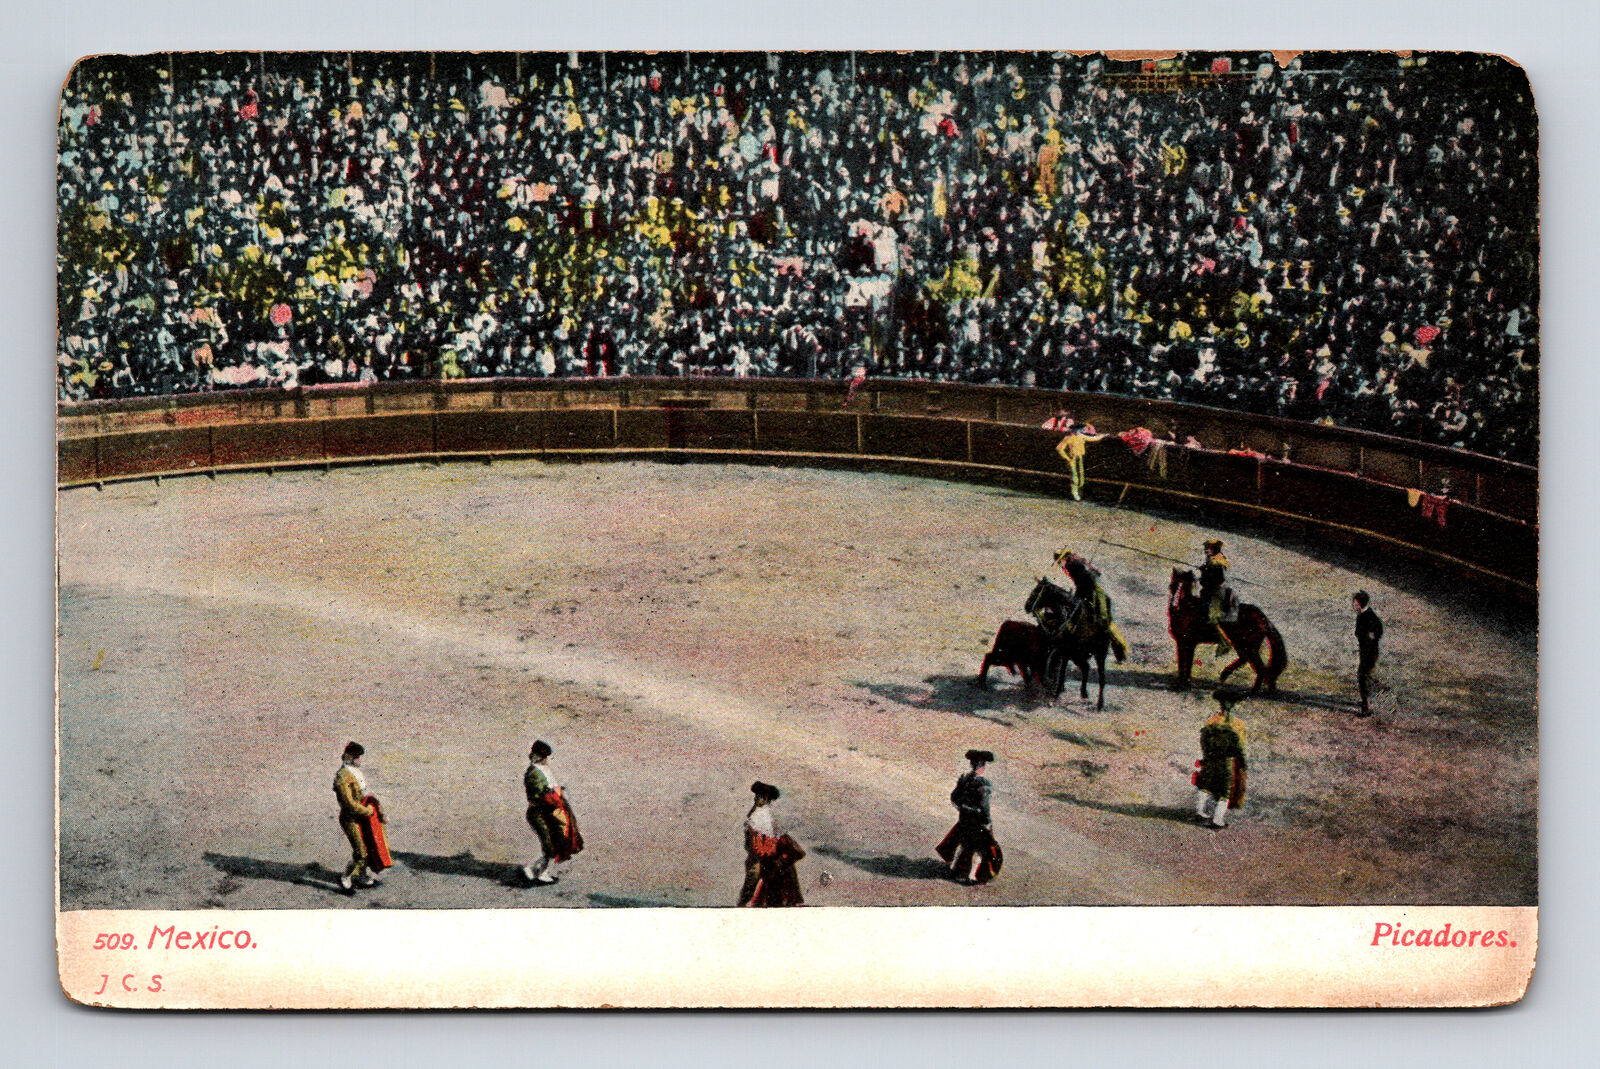 Picadores Bullfighting Toreadors Mexico Postcard